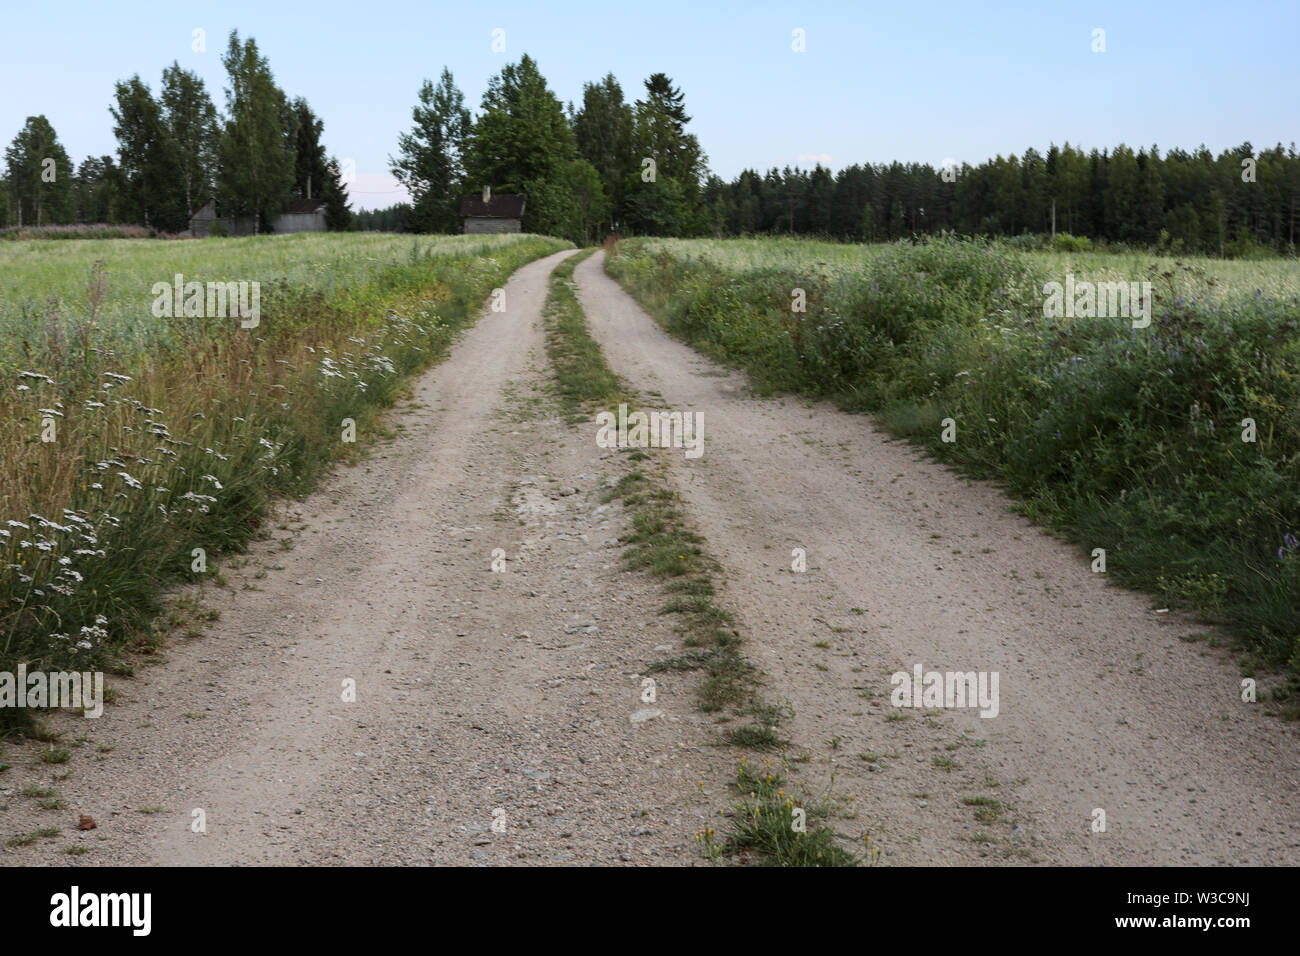 Rural dirt road in Ylöjärvi, Finland Stock Photo